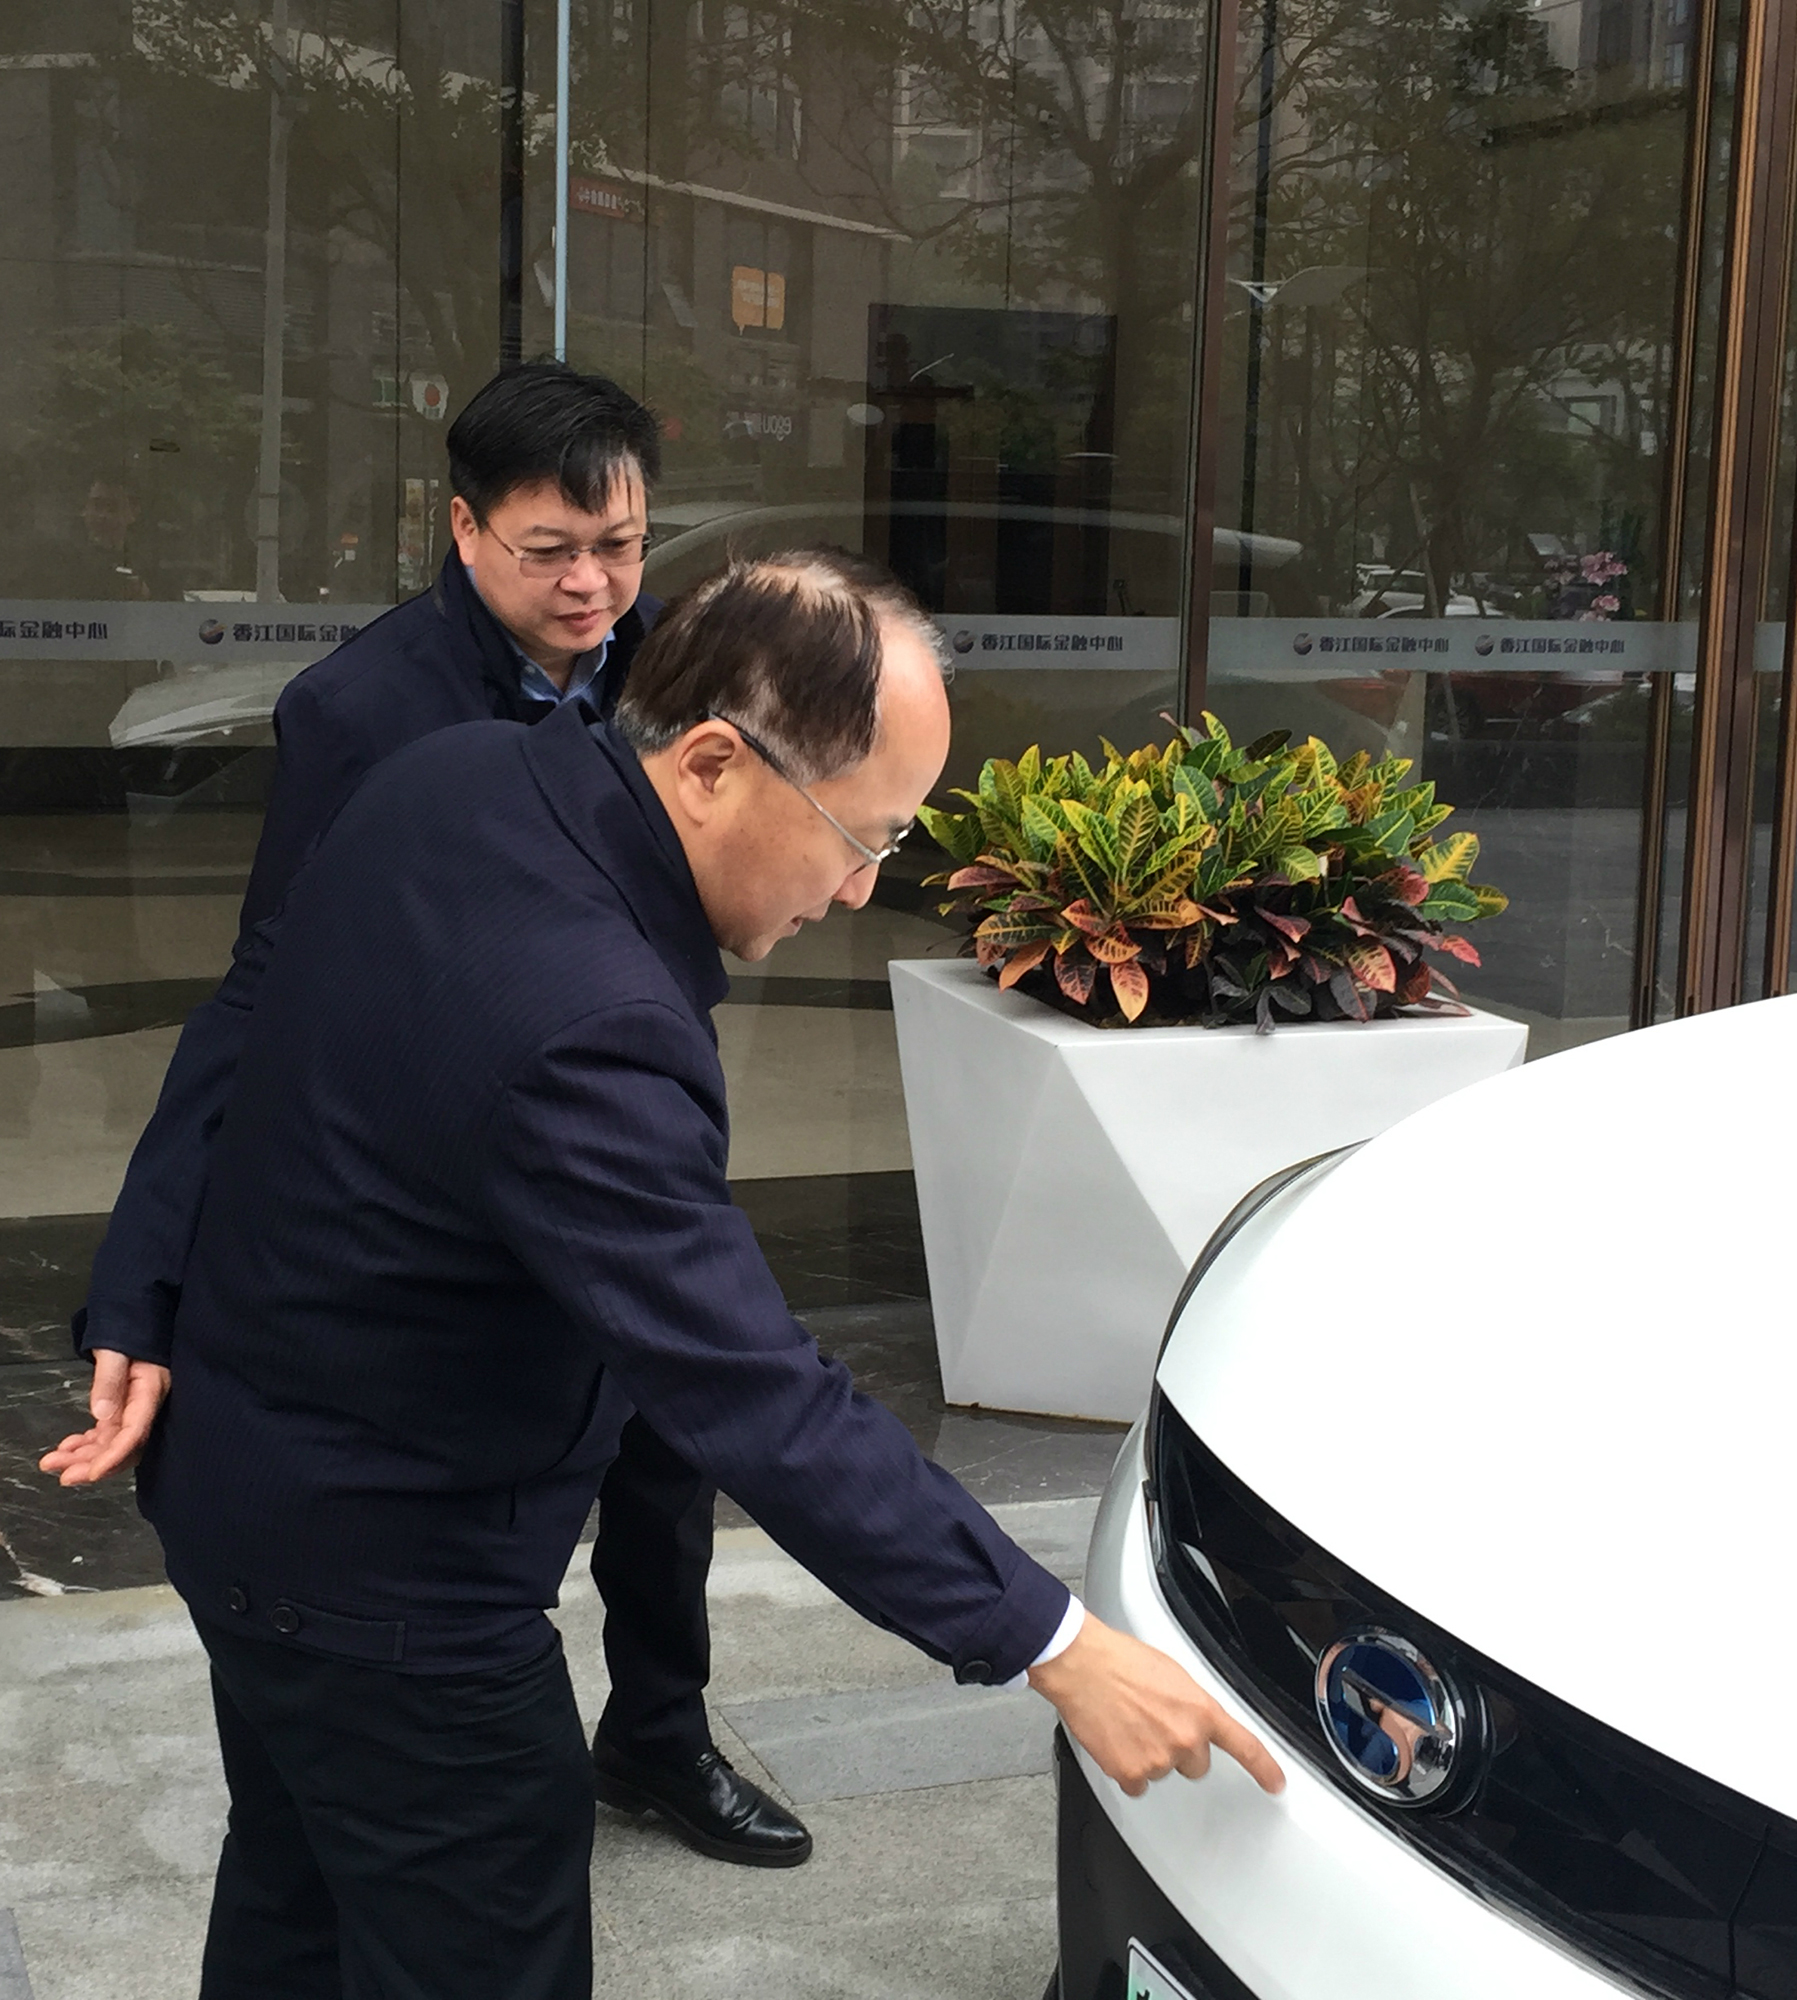 3月24日A在廣州小馬智行科技有限公司了解全自動無人駕駛汽車情況C